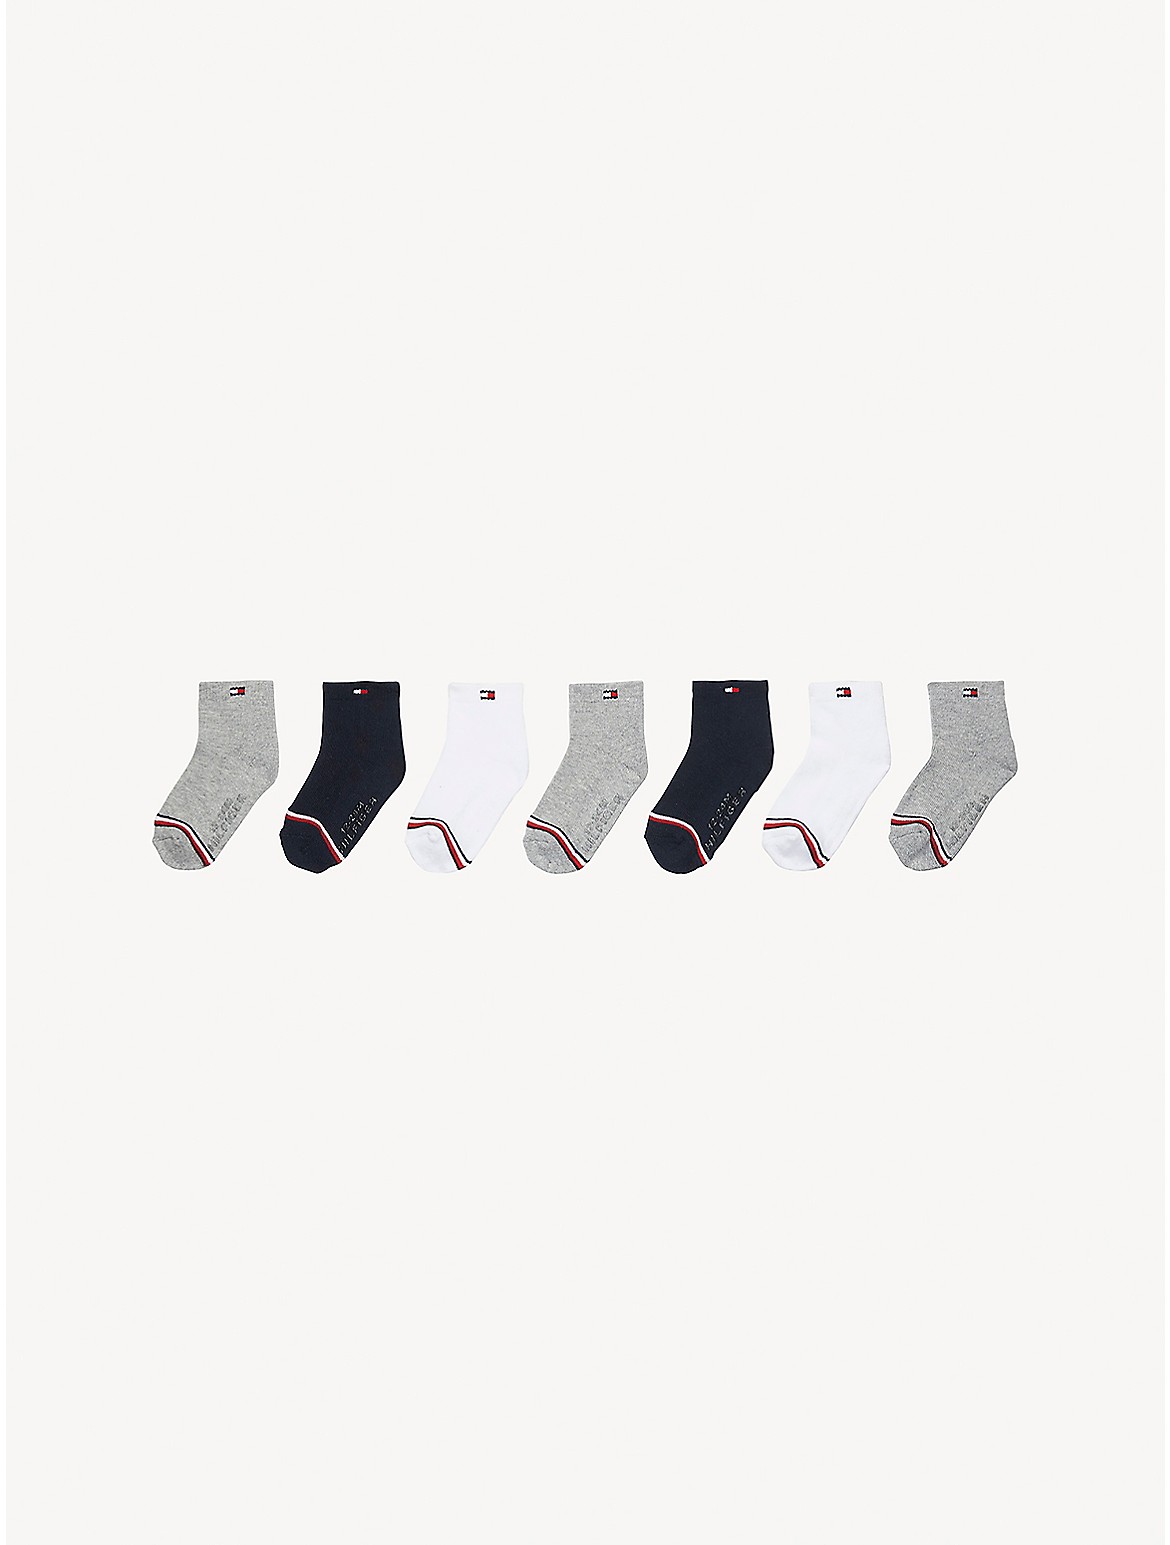 Tommy Hilfiger Babies' Sock 7-Pack - Multi - TODDLER